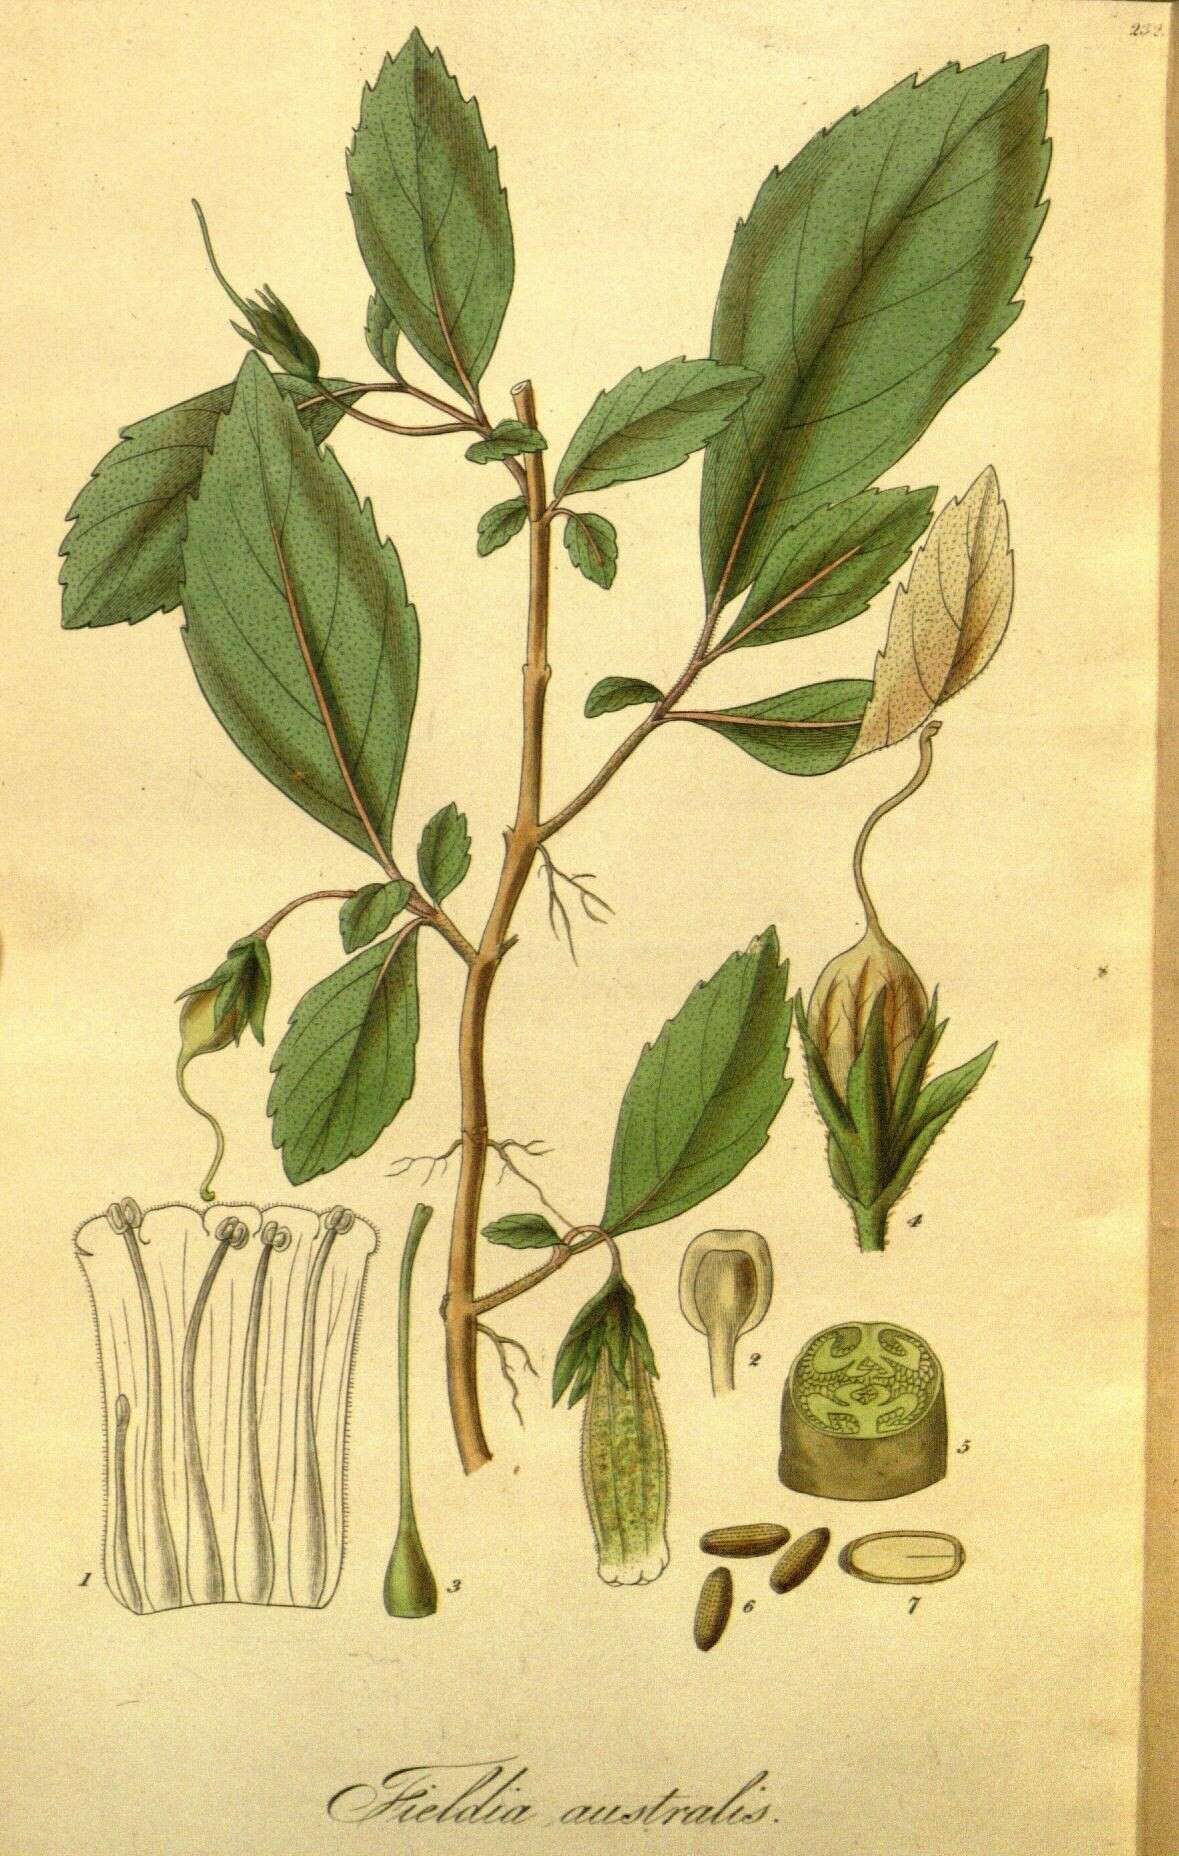 Image of Fieldia australis A. Cunn.